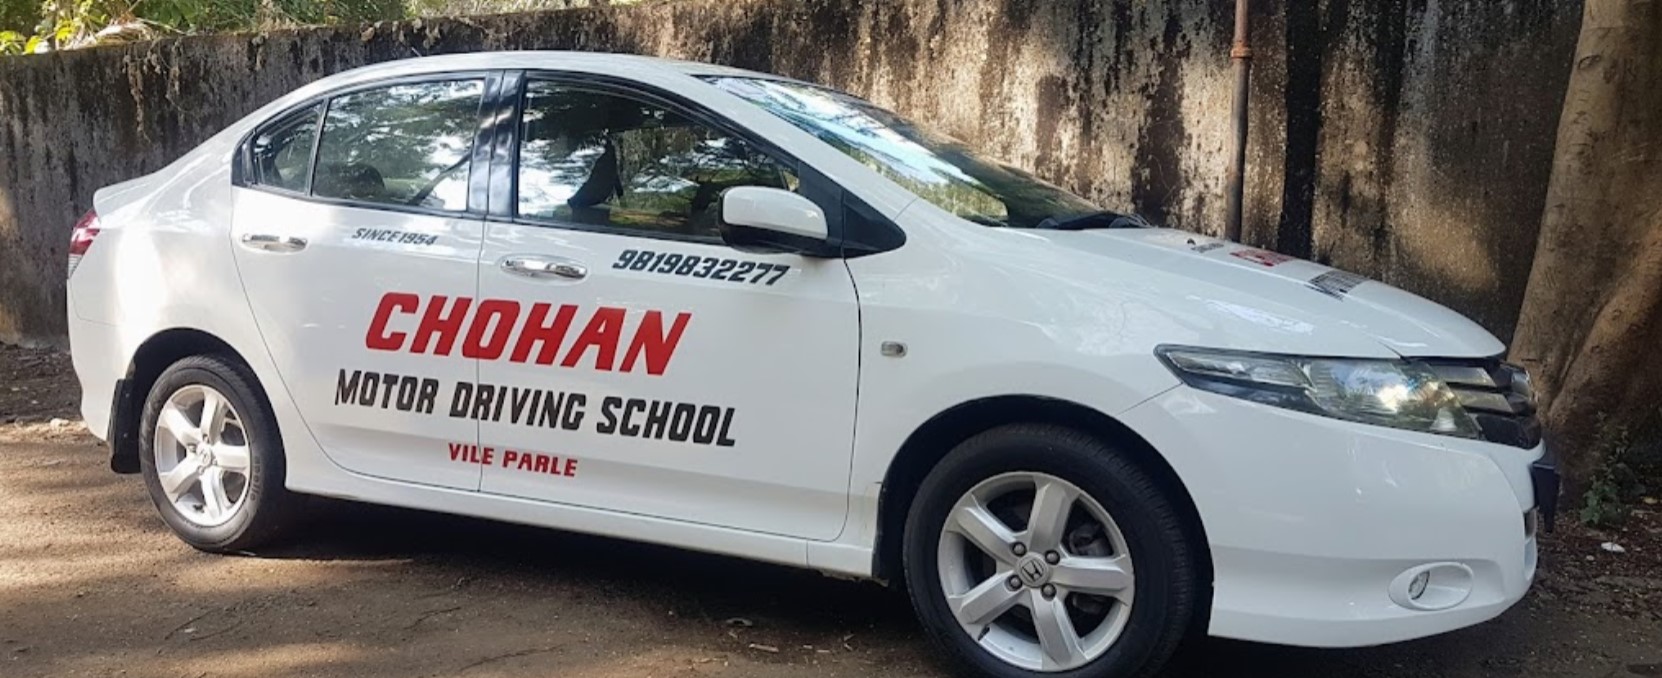 Chohan Motor Driving School in Vile Parle East